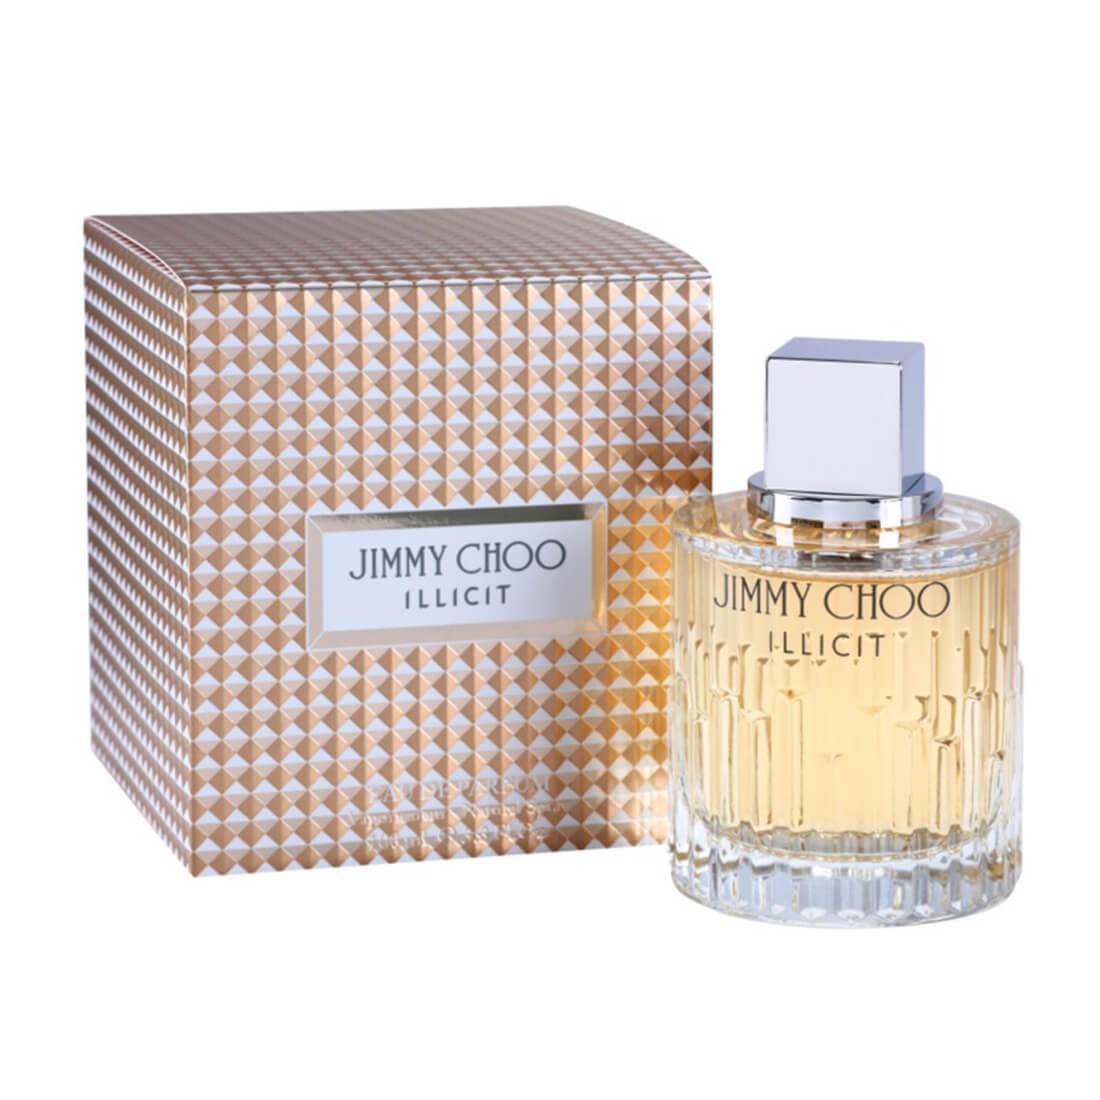 Jimmy Choo Illicit Eau De Parfum